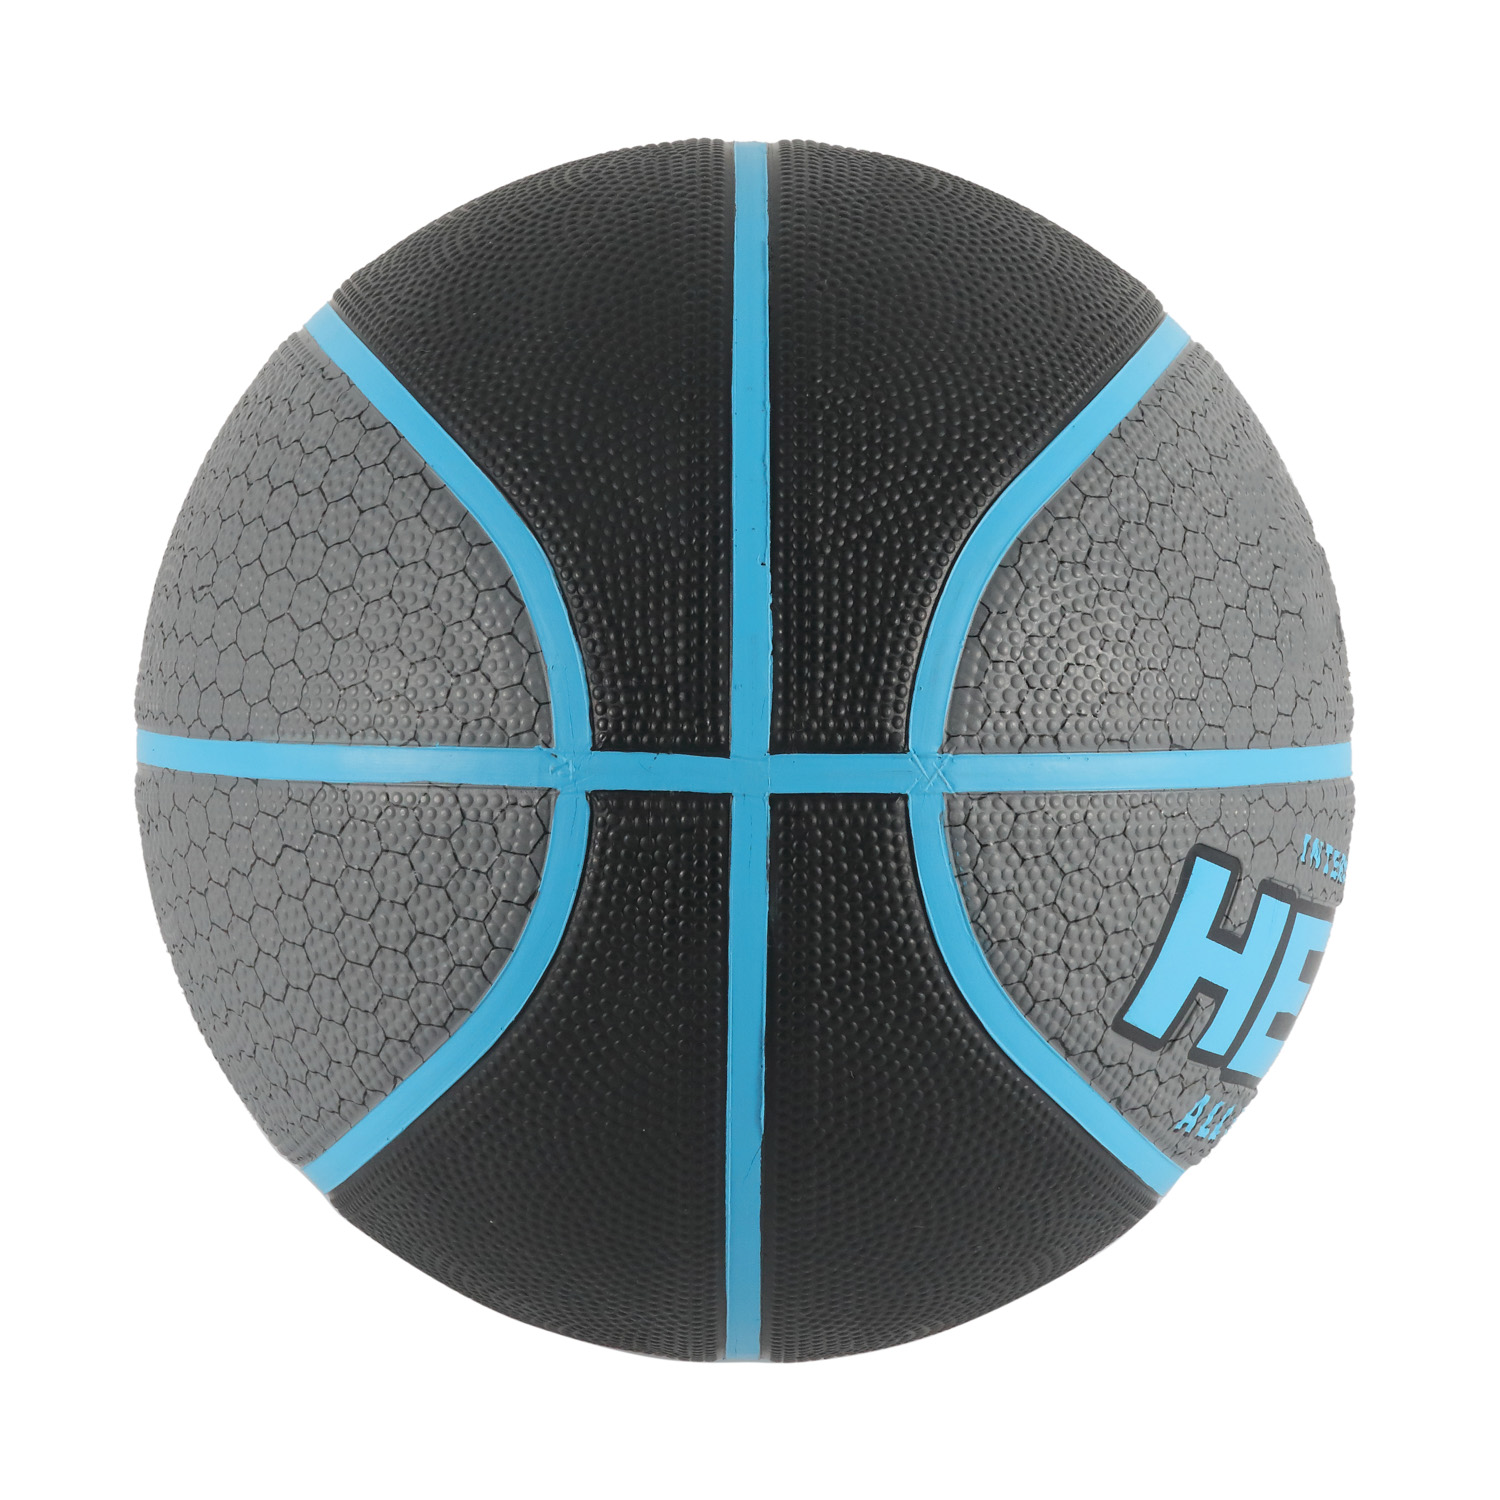 Laminierter Basketball in offizieller Größe mit brauner PVC-Hülle